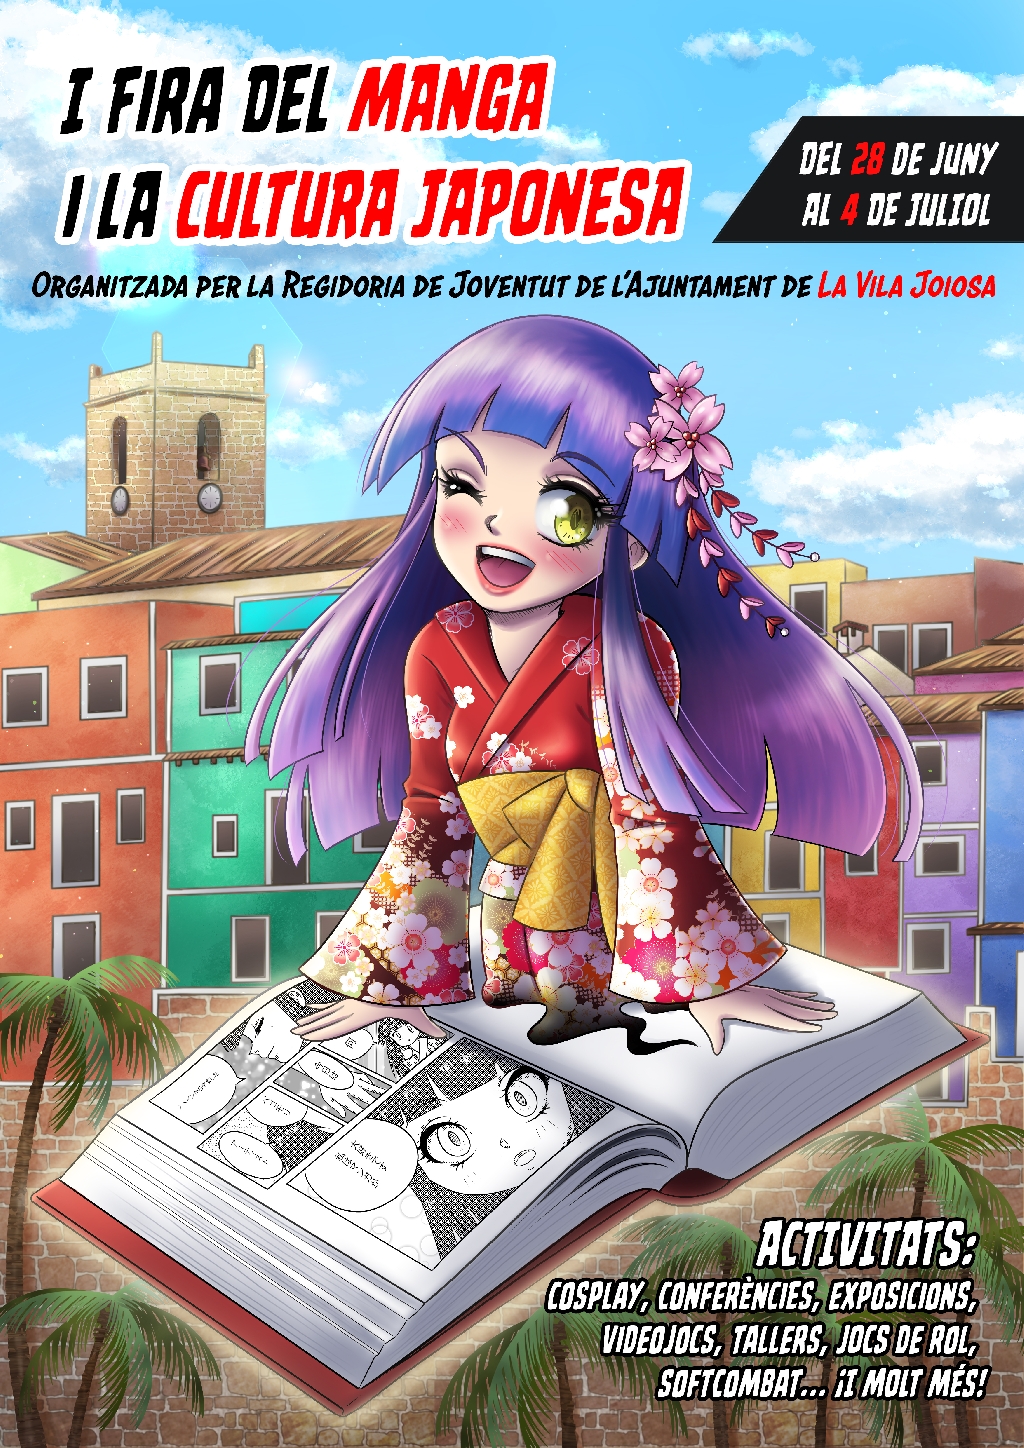 La I Fira del Manga i Cultura Japonesa de la Vila Joiosa ja té cartell oficial